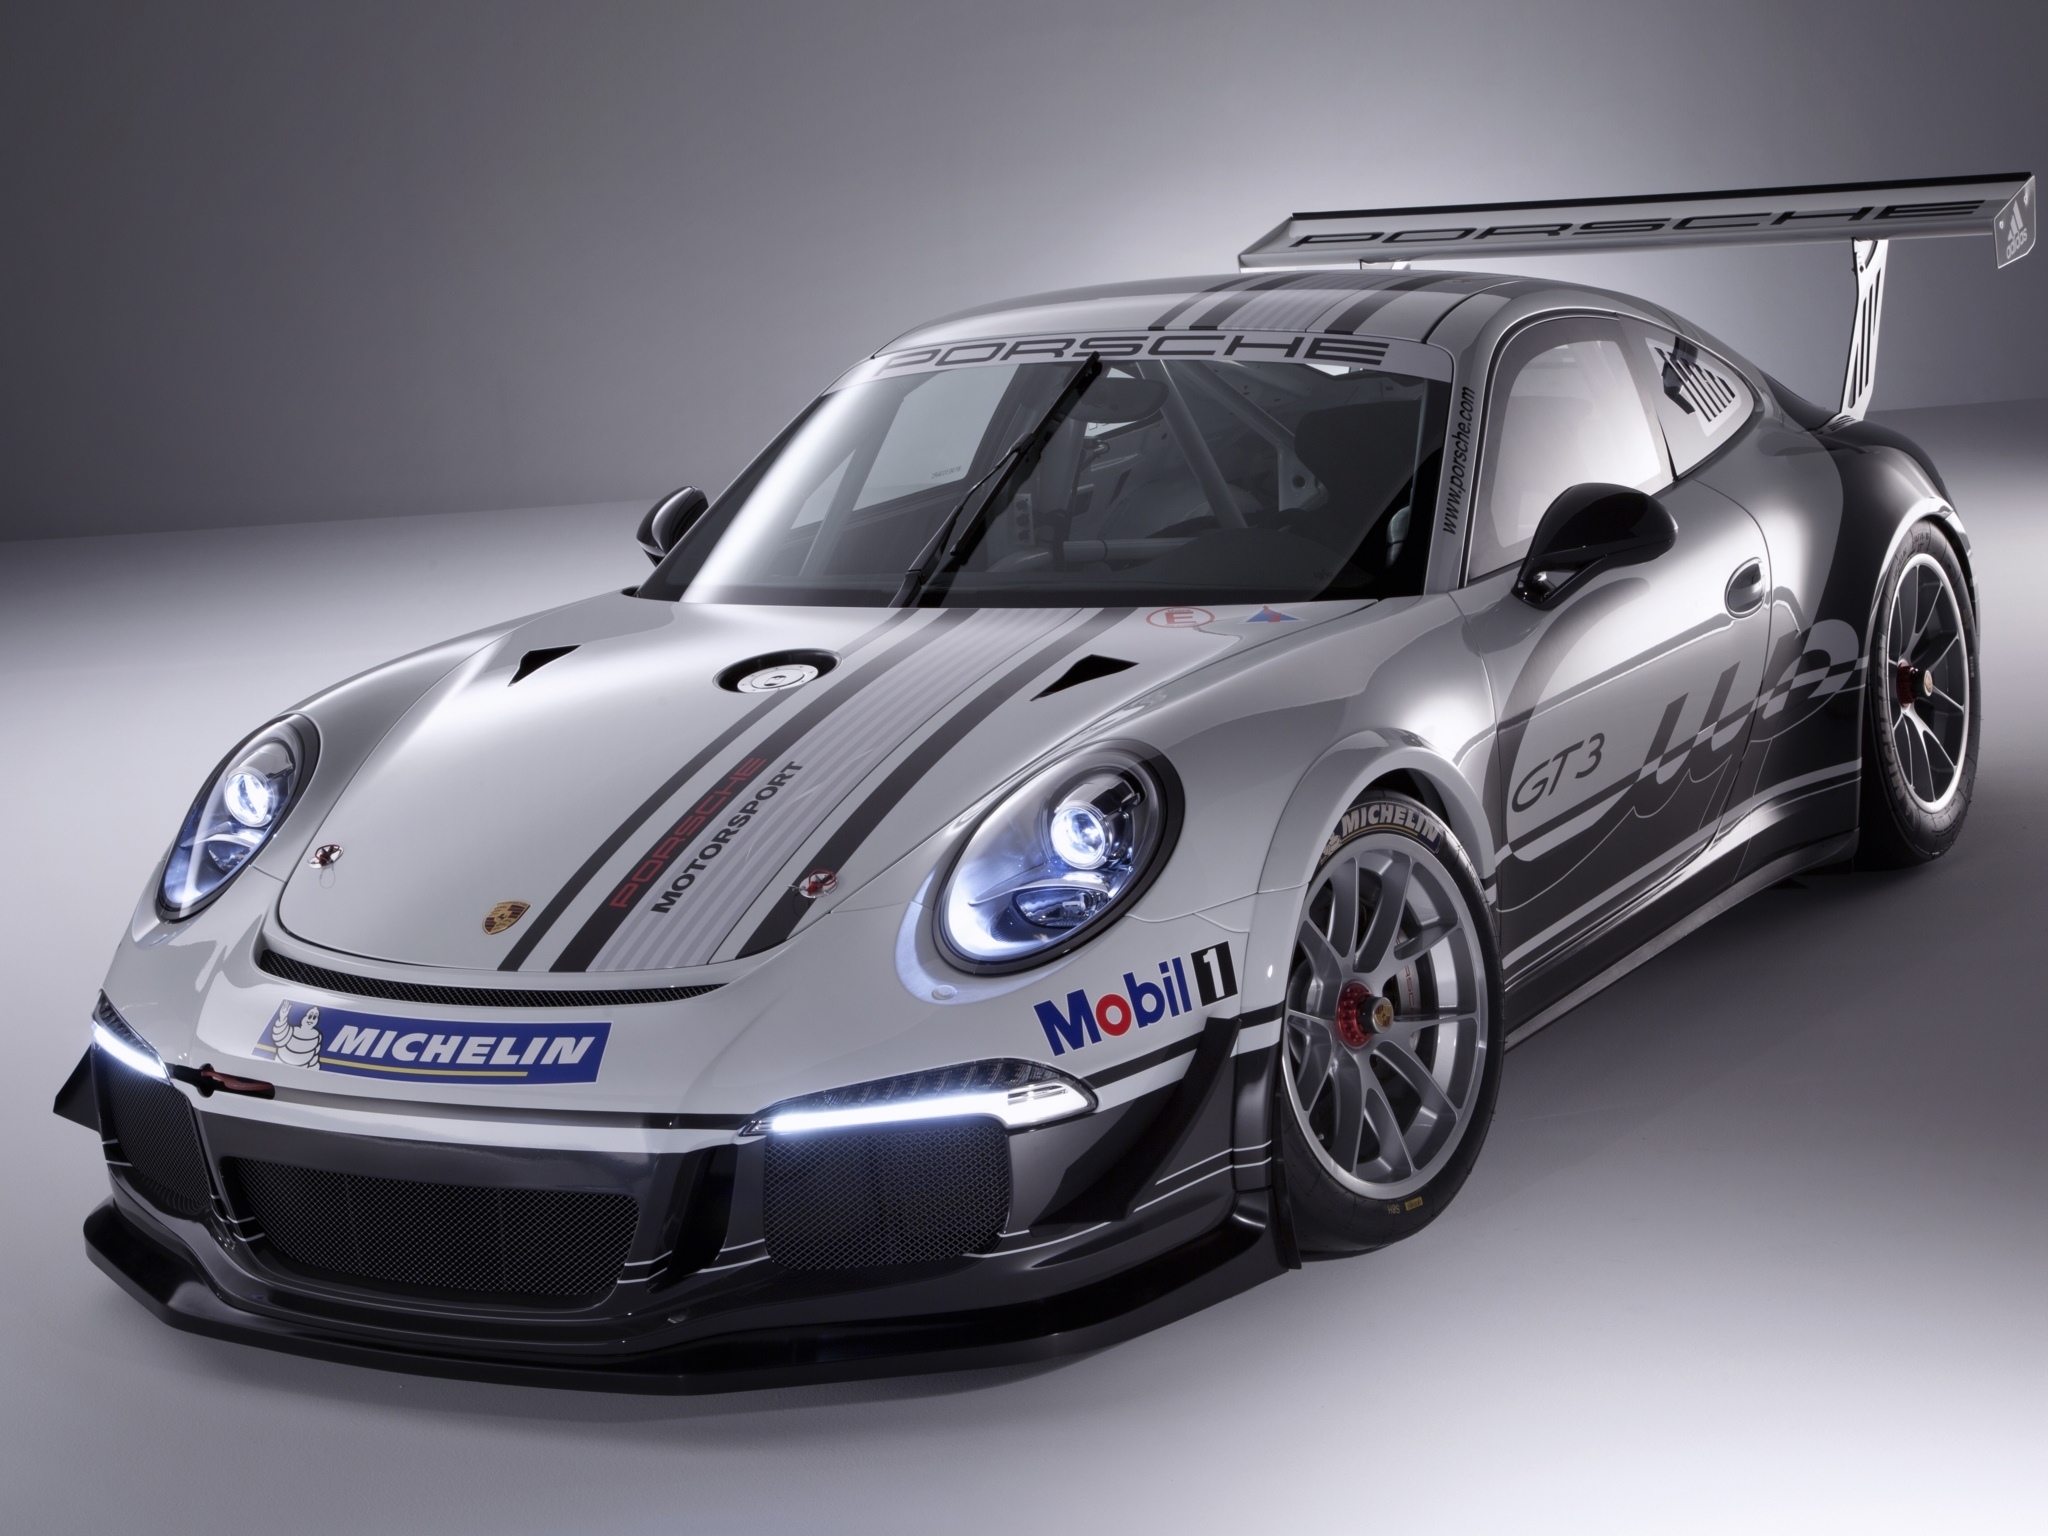 2013, Porsche, 911, Gt3, Cup, 991, Race, Racing Wallpapers HD / Desktop ...